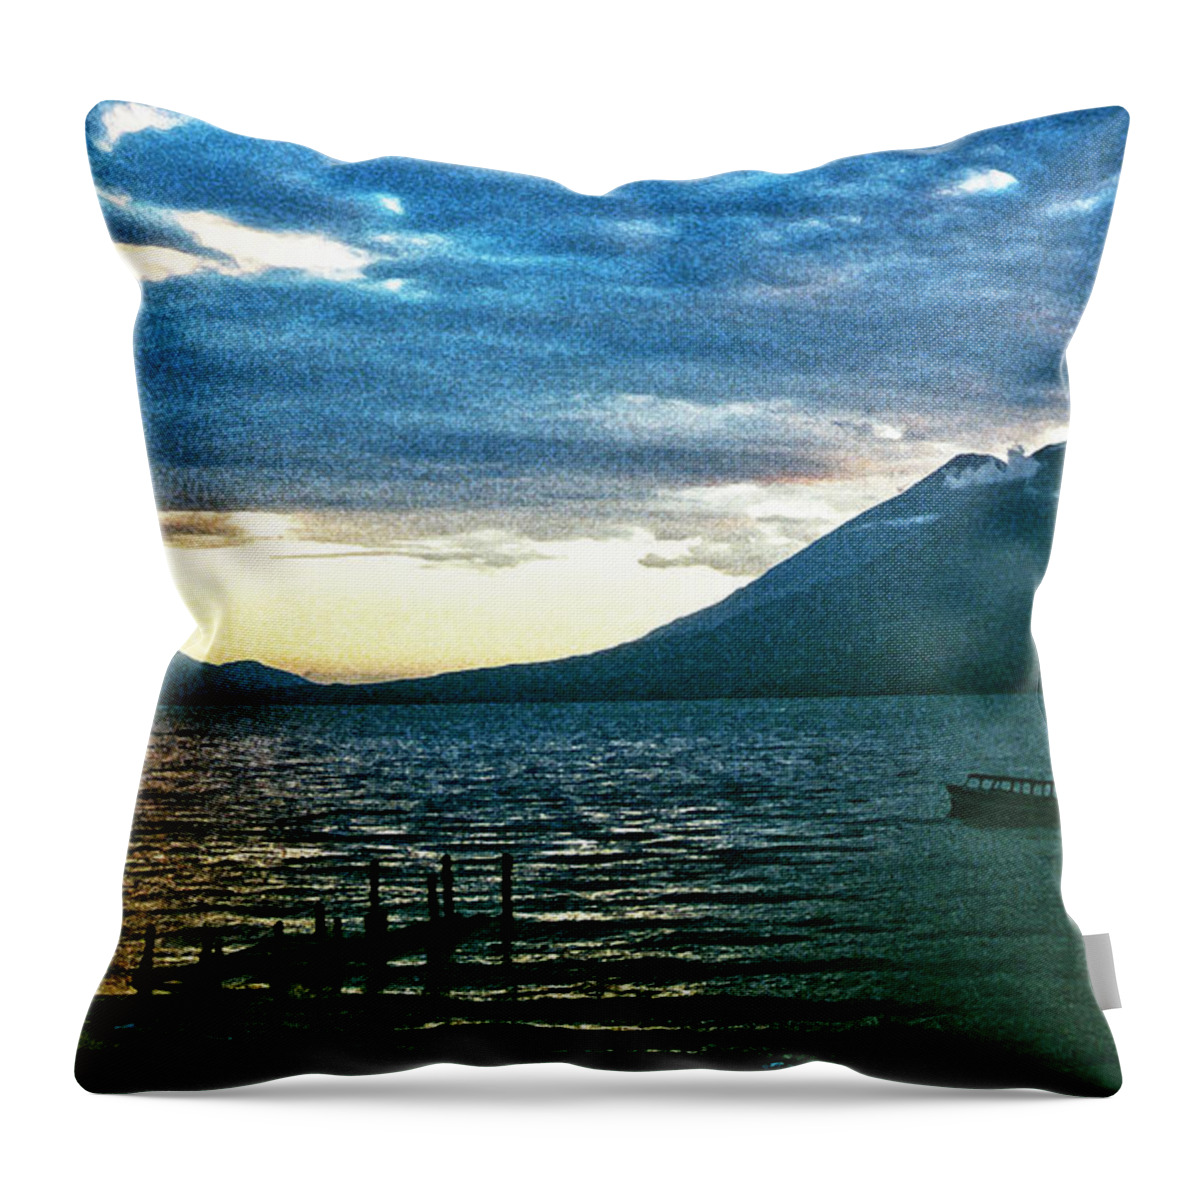 Lake Atitlan Guatemala Throw Pillow featuring the photograph Lake Atitlan Guatemala by Neil Pankler